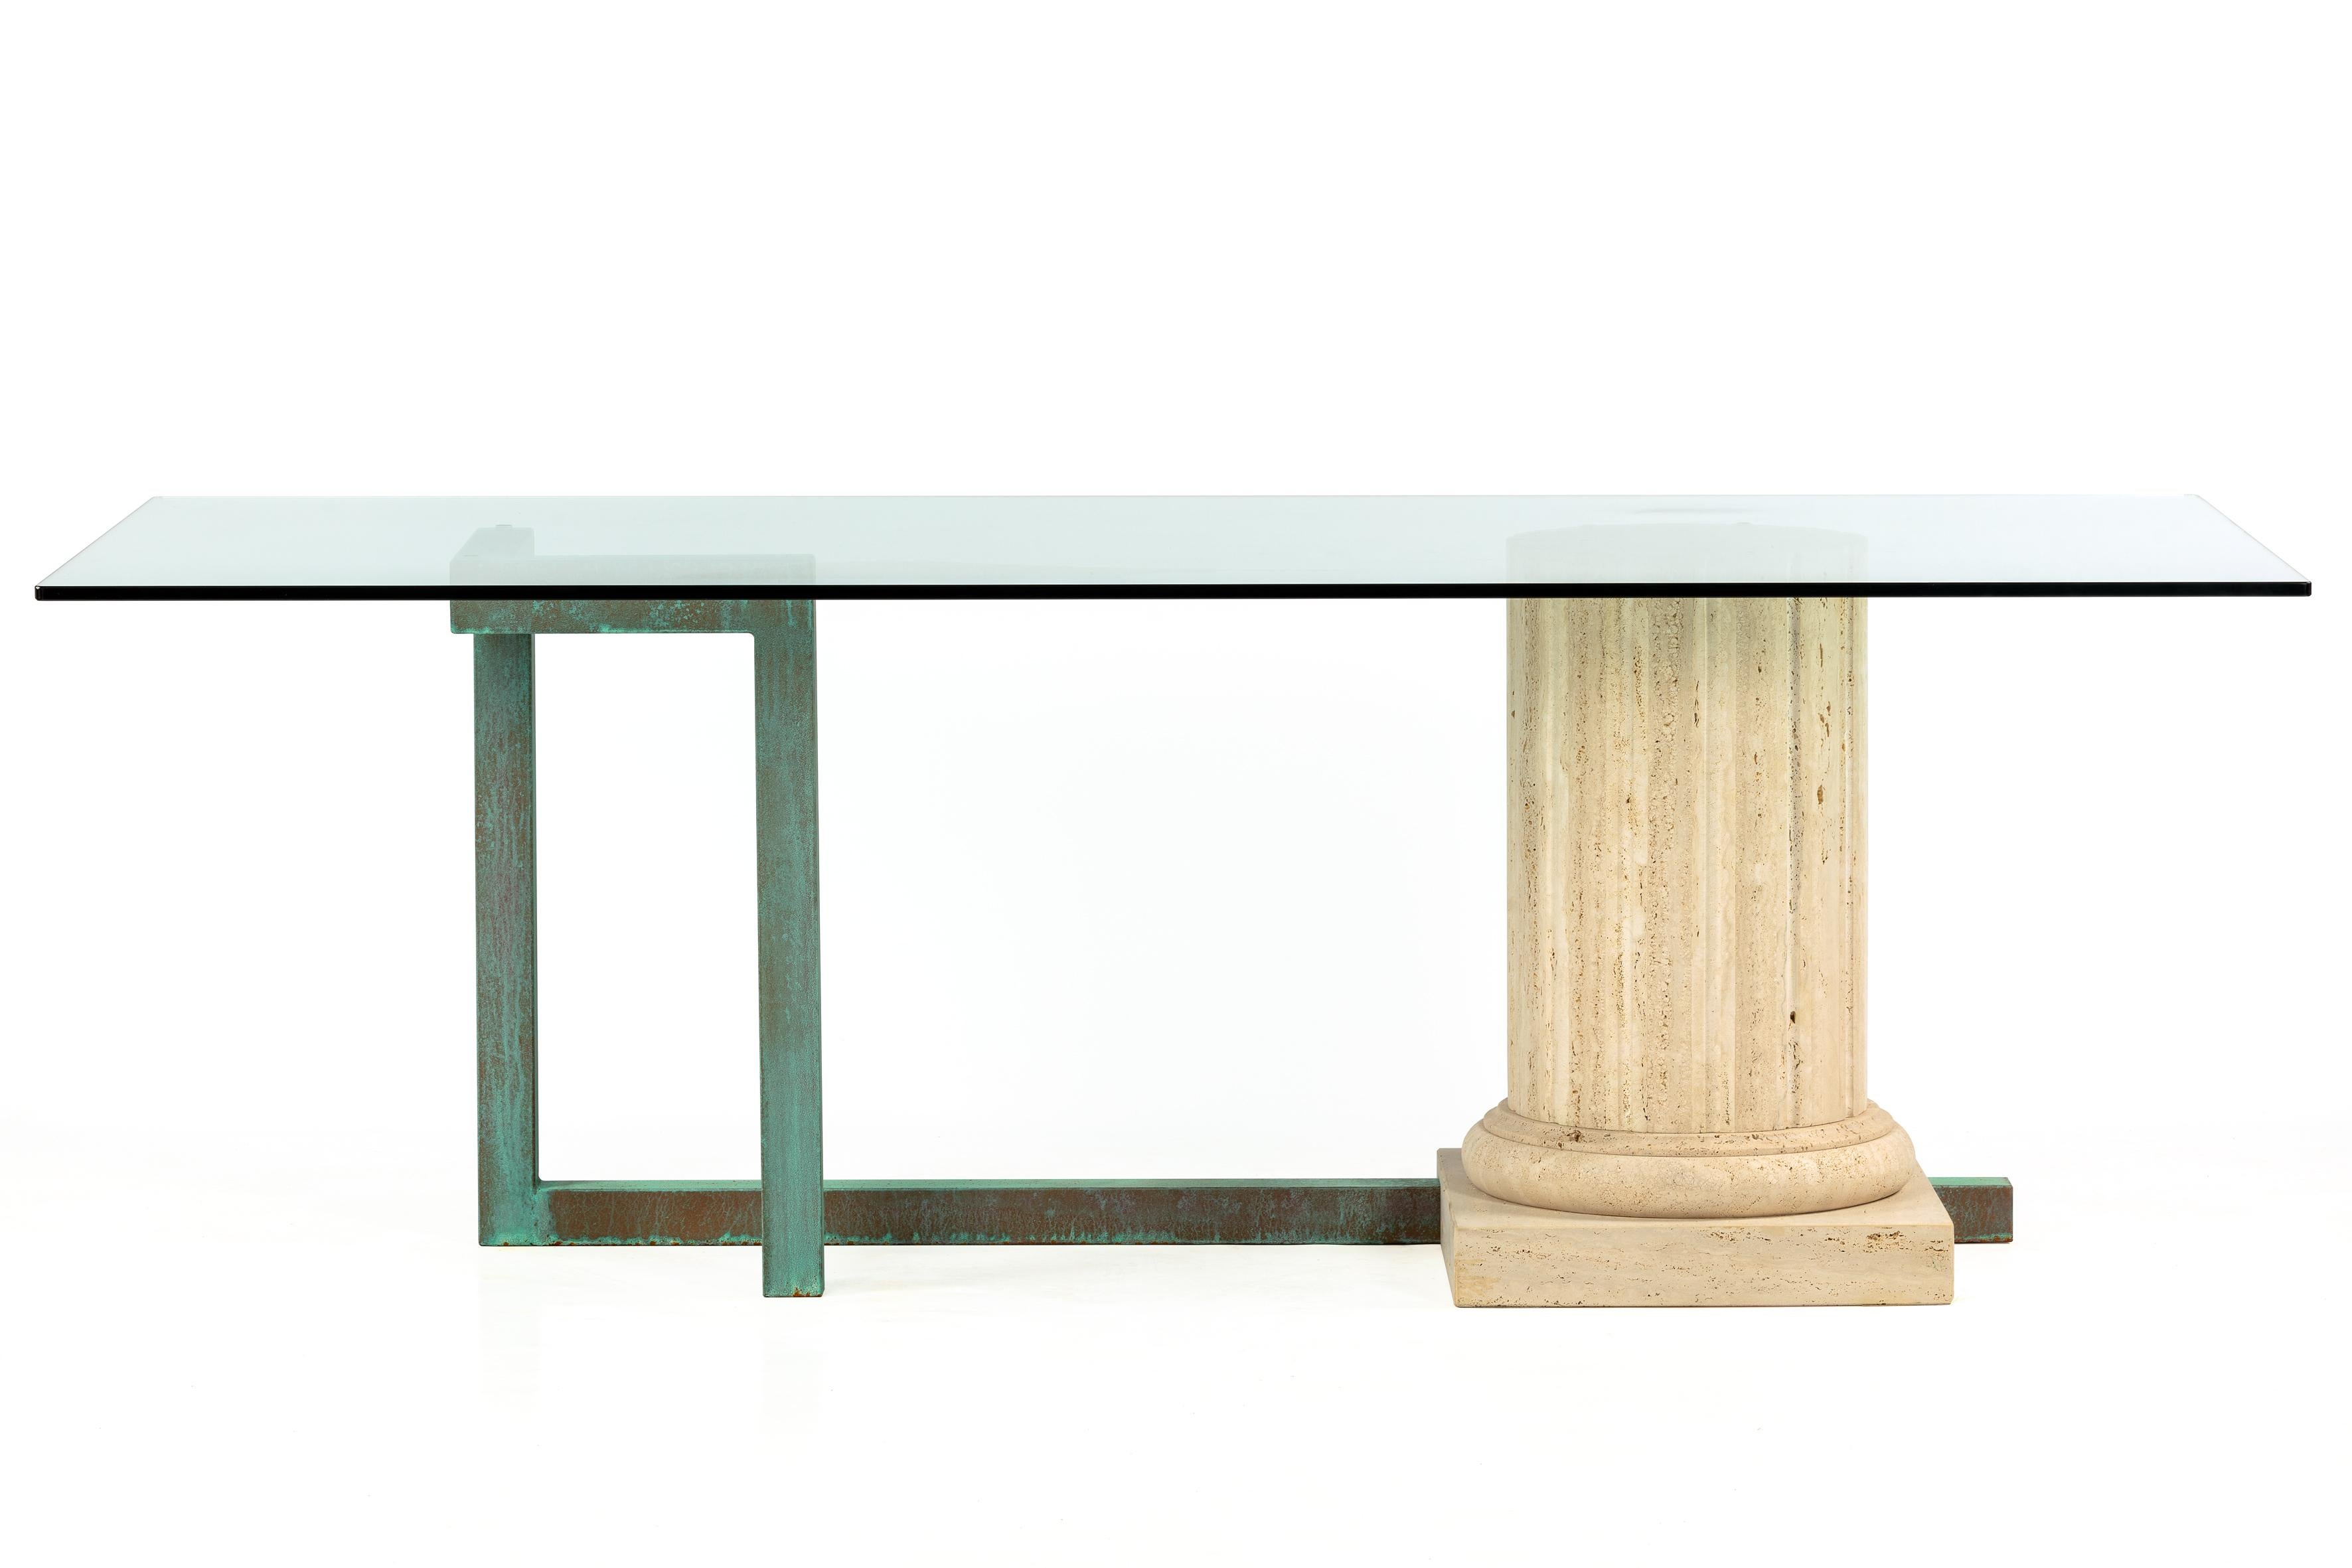 Table de salle à manger SILLAR avec une colonne en marbre travertin à structure creuse, de style contemporain et proportionné. La structure est traversée à sa base par une structure métallique de cuivre oxydé, la terminaison de la pièce métallique